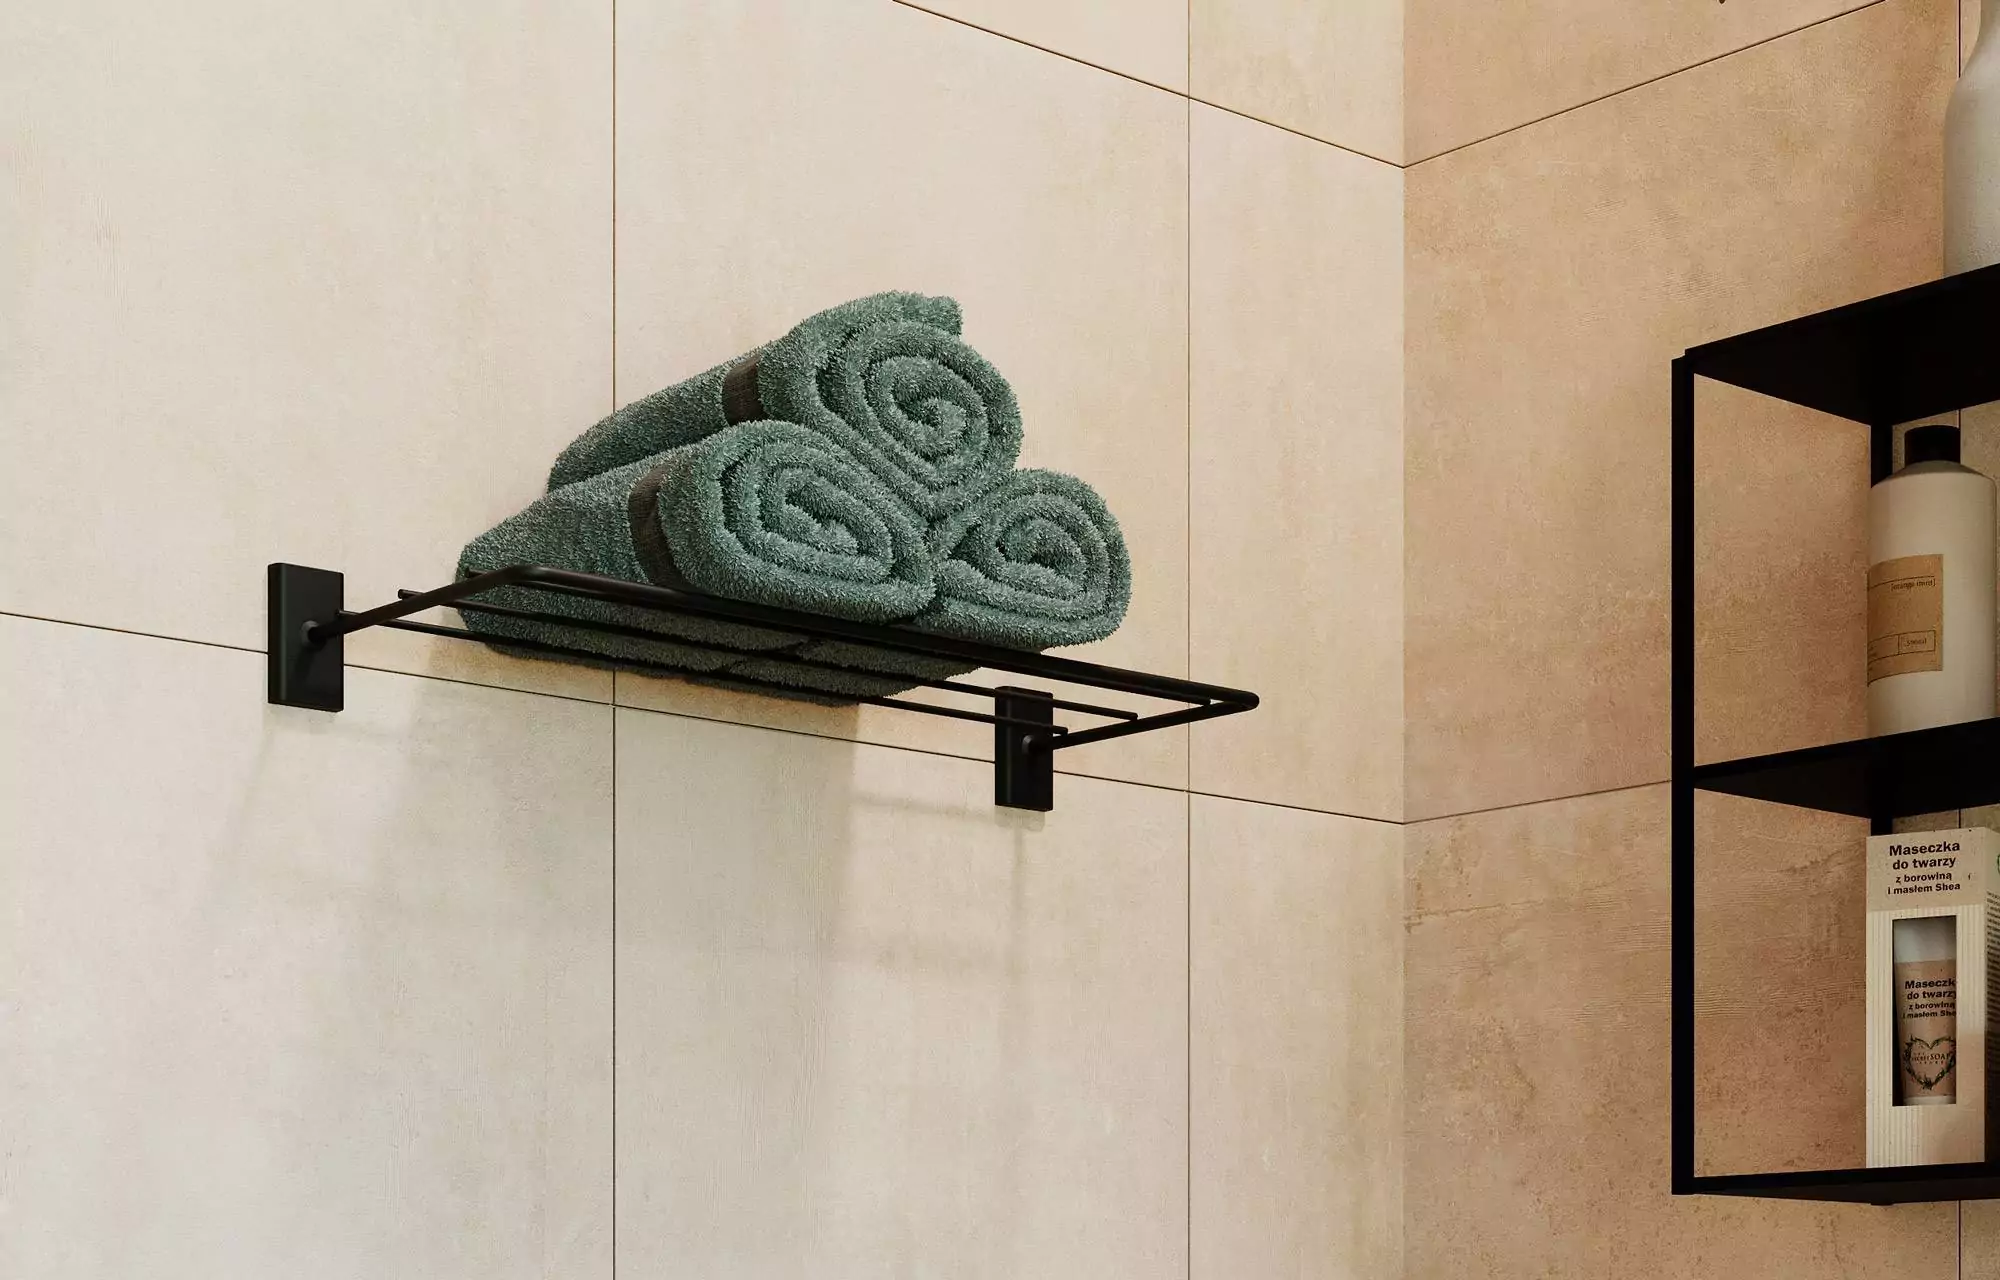 Toallero para baño montado en la pared, toallero con estante de madera -  VIRTUAL MUEBLES